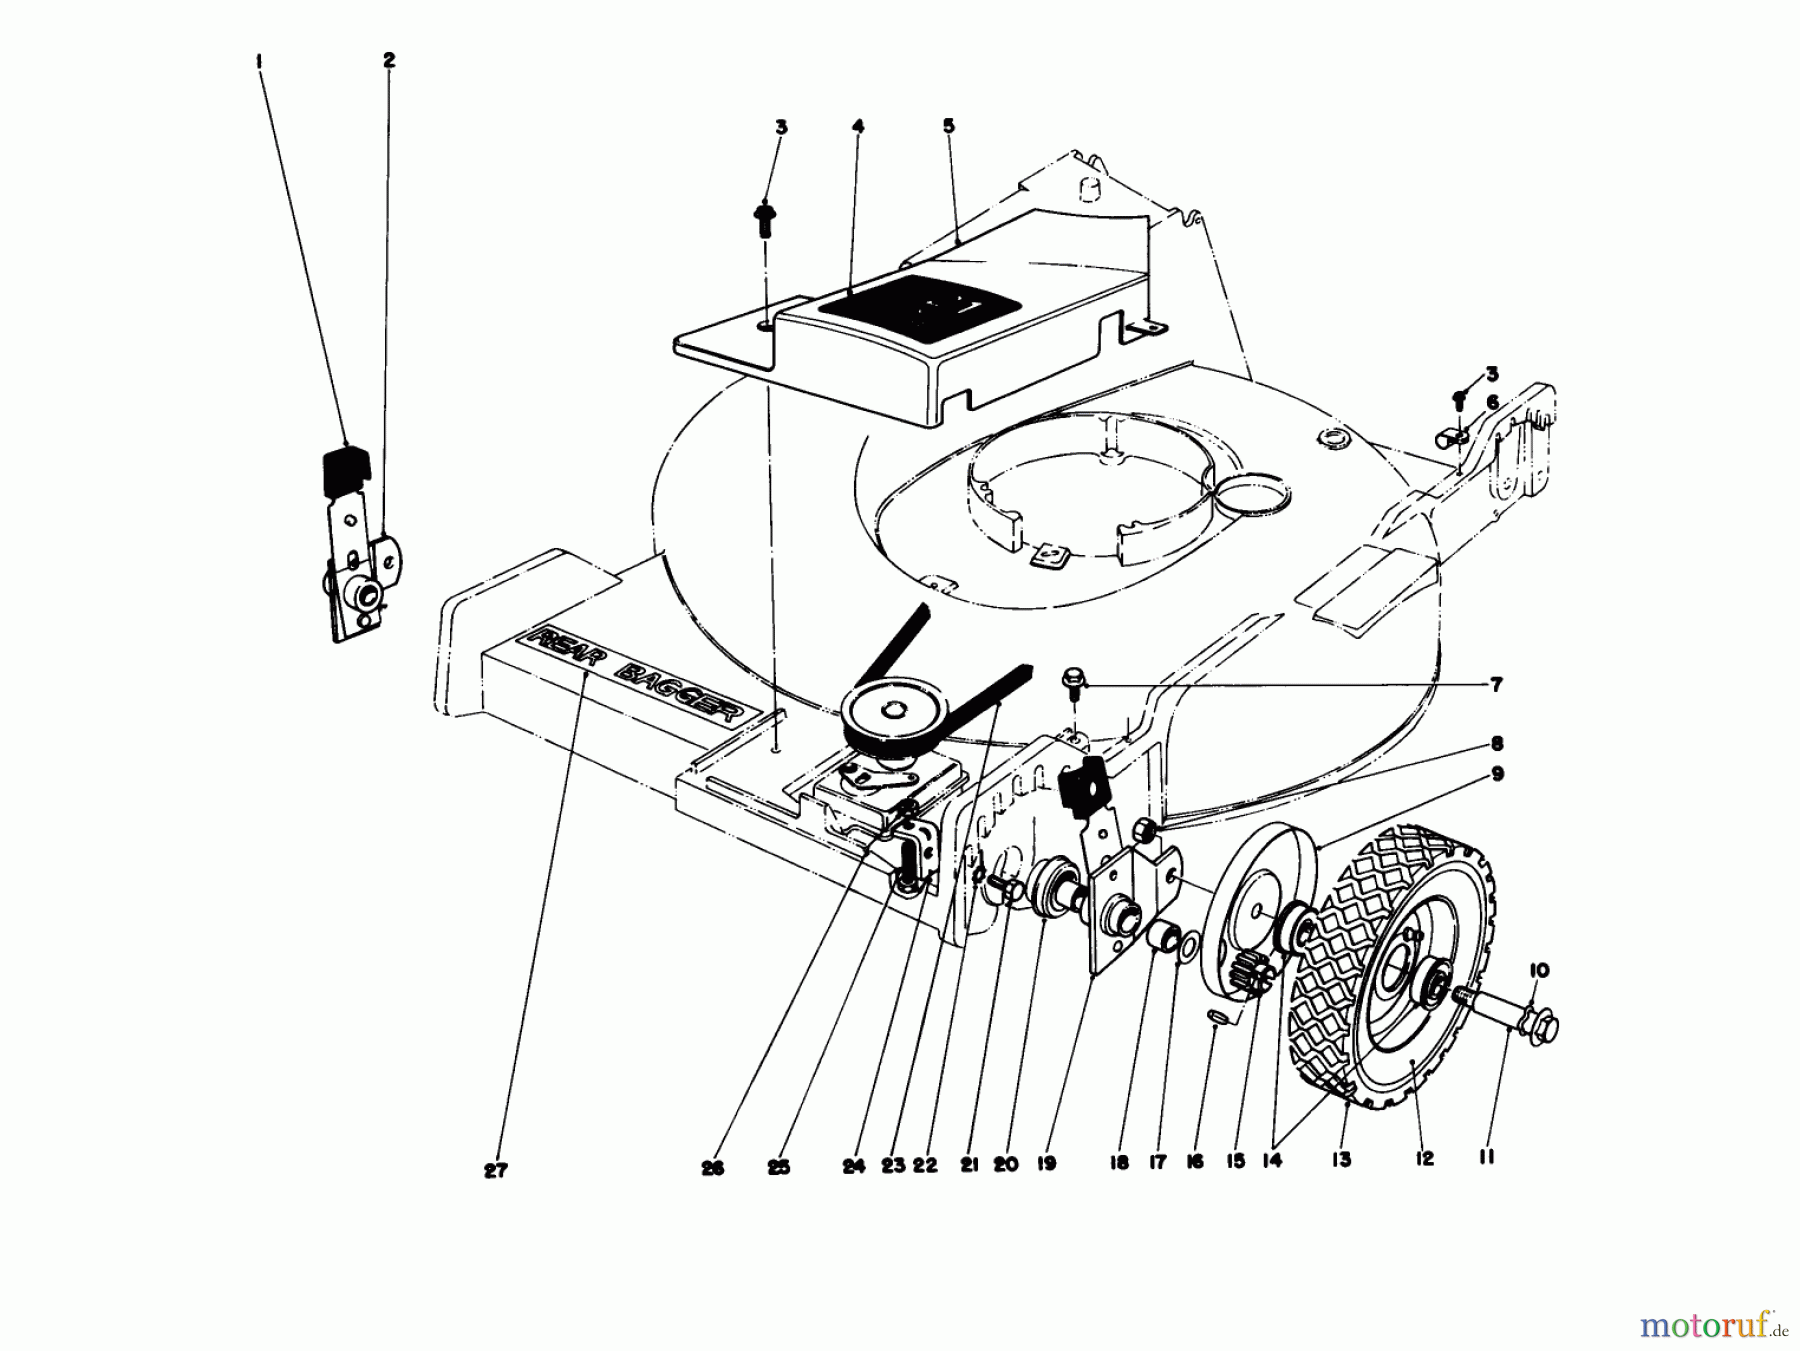  Toro Neu Mowers, Walk-Behind Seite 1 20575 - Toro Lawnmower, 1978 (8000001-8007500) FRONT WHEEL AND PIVOT ARM ASSEMBLY